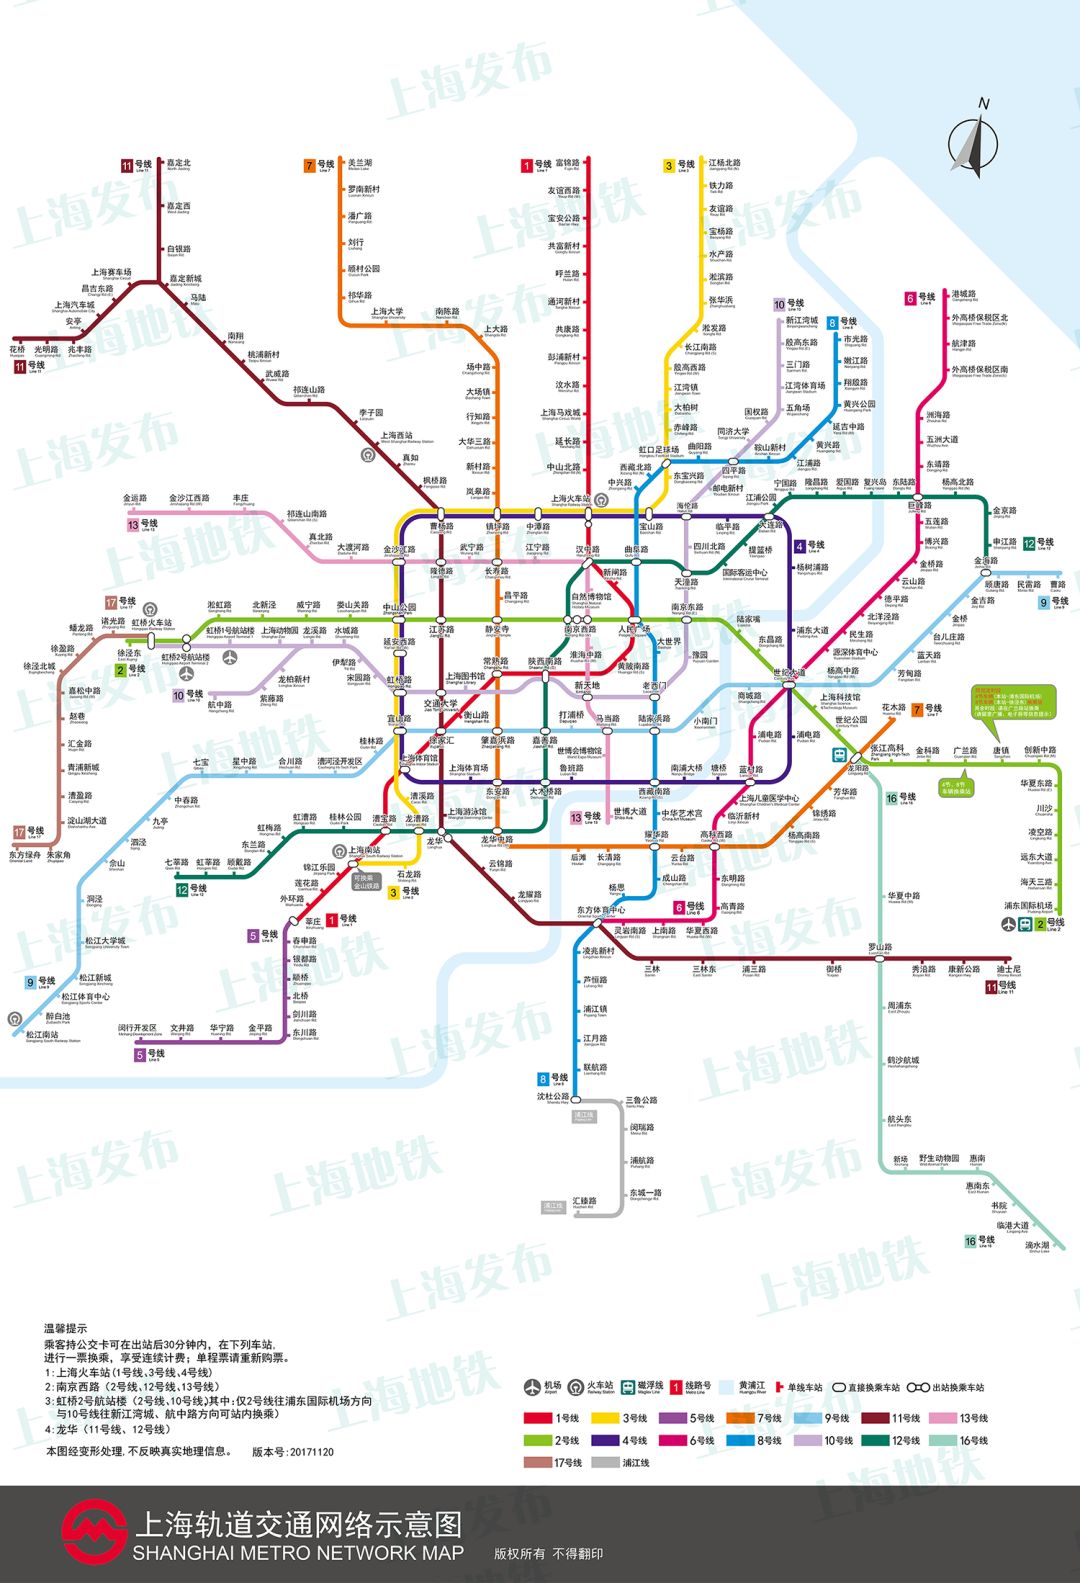 最新!上海地铁运营图全面更新了,新增"浦江线",快来看看吧!